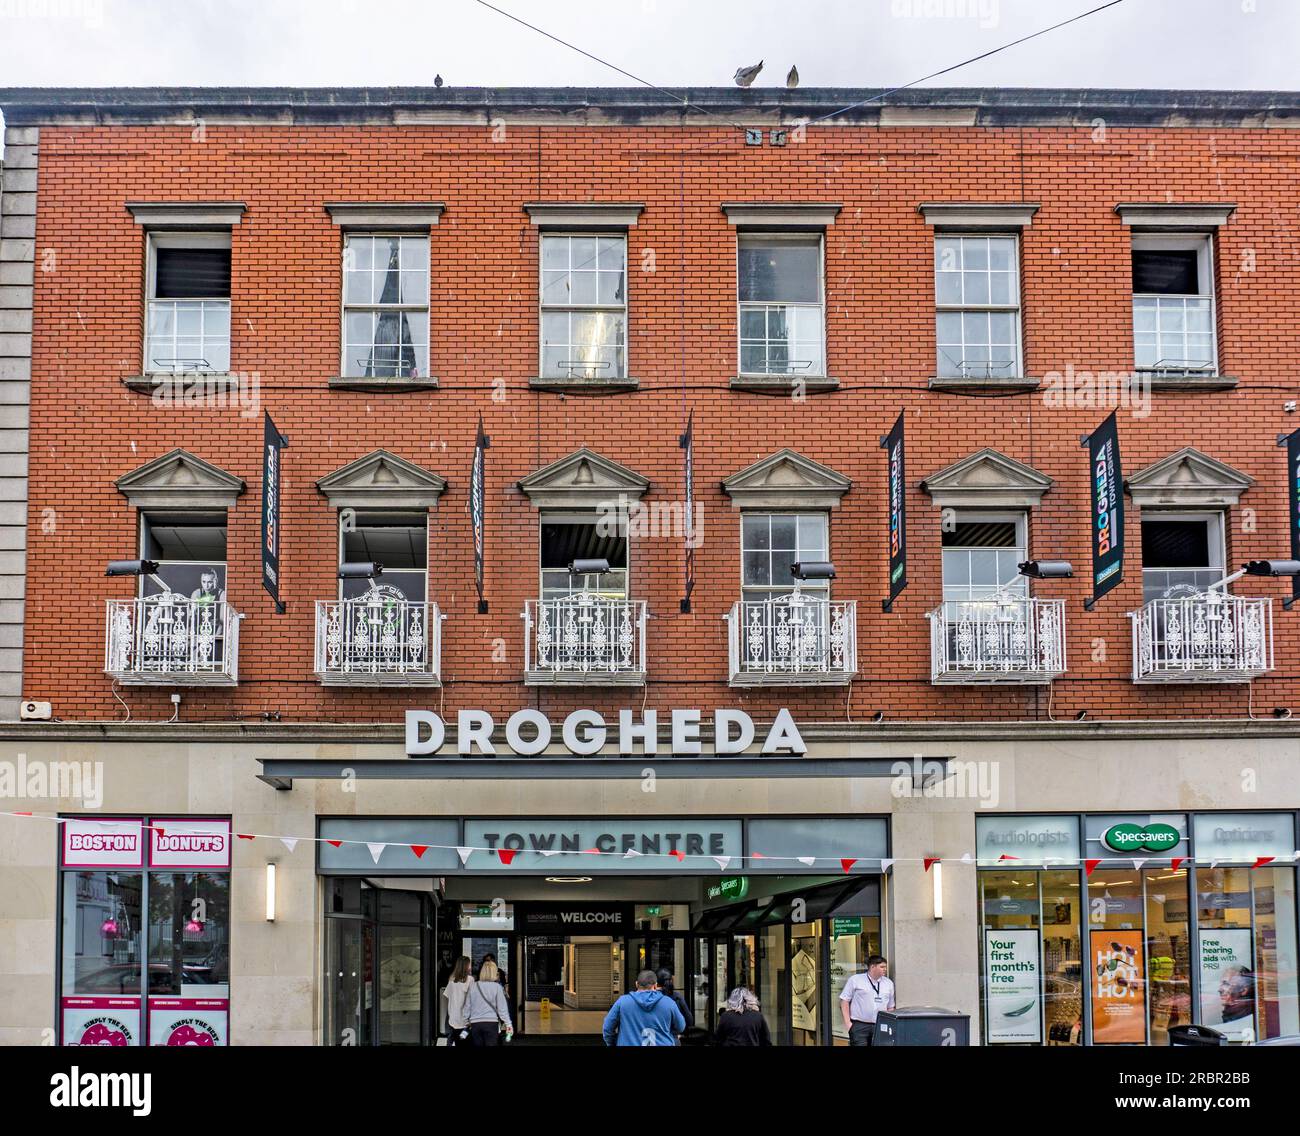 Das Einkaufszentrum Drogheda Town Centre auf der West Street, Drogheda, Co Louth, Irland. Mit Dealz, Specsavers, Dunnes Stores, Insomnia, Apotheke. Stockfoto